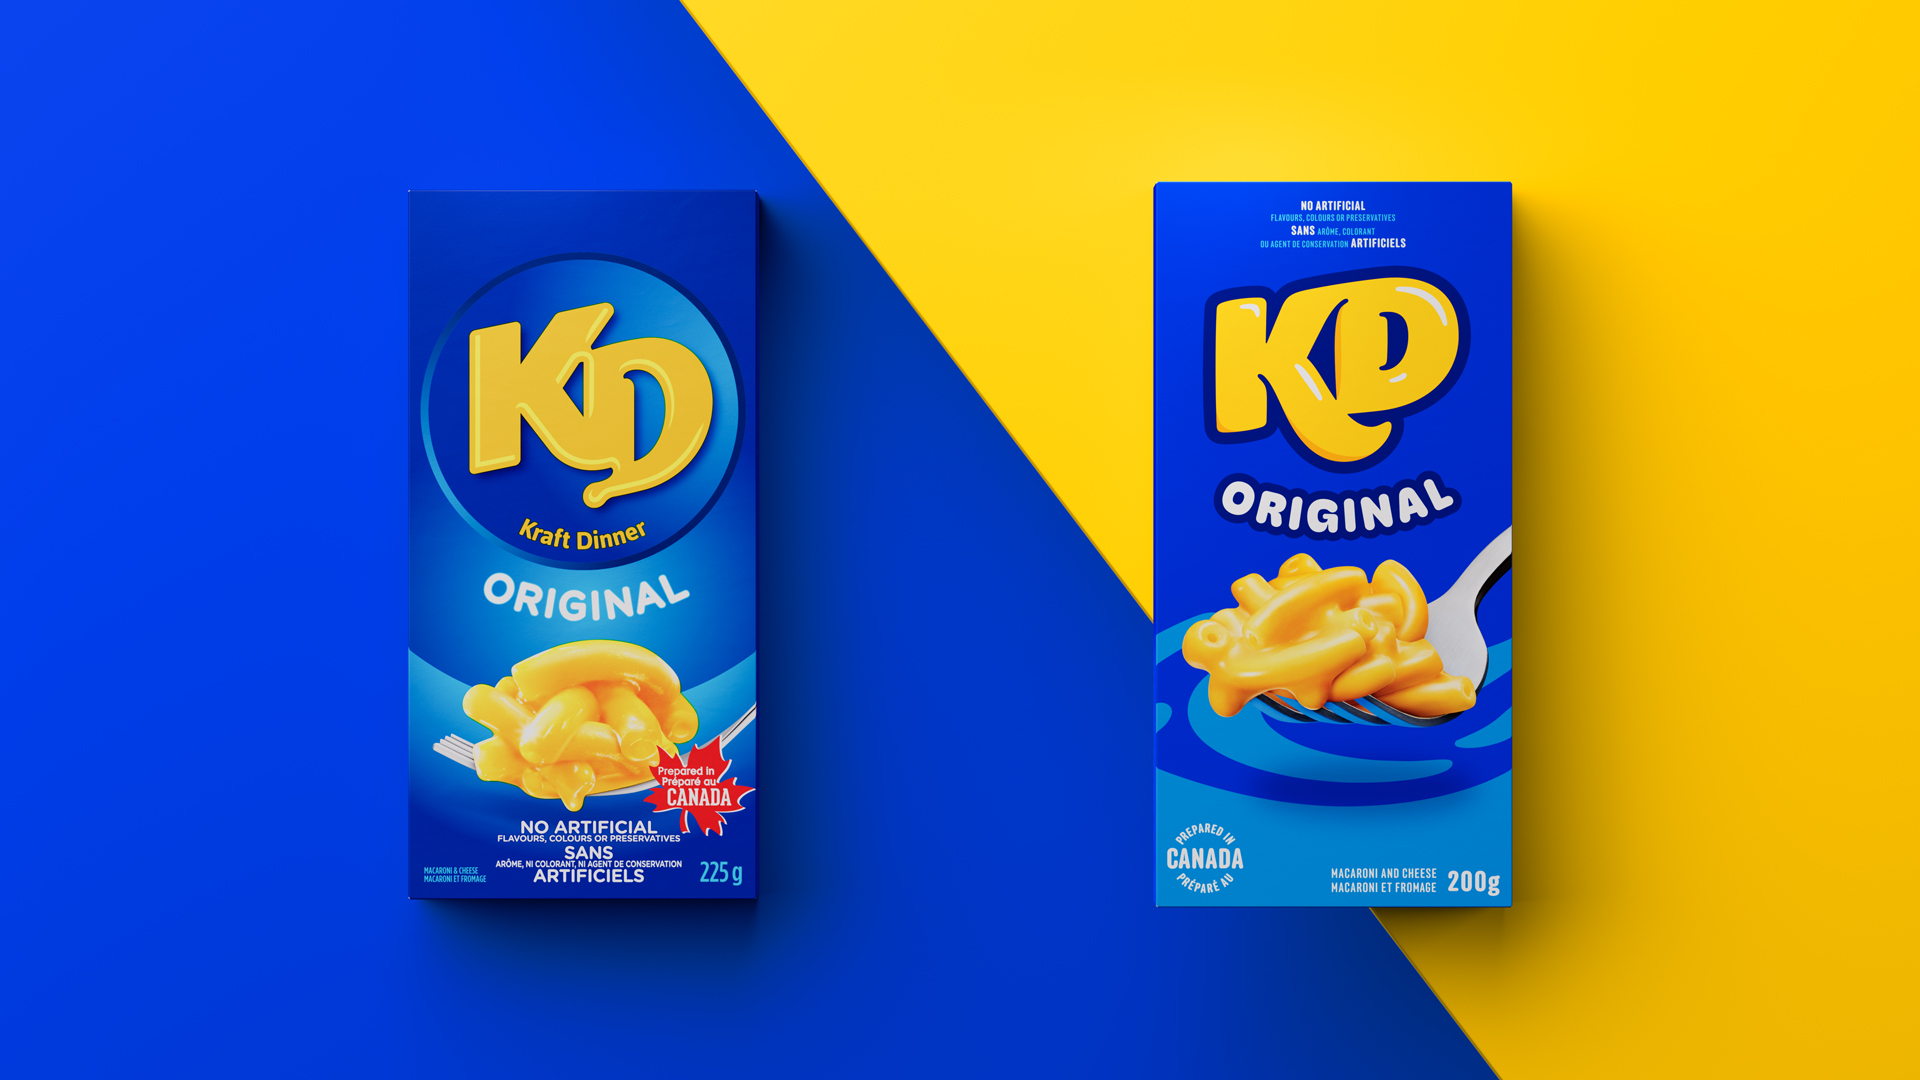 KD box redesign for Kraft Dinner.